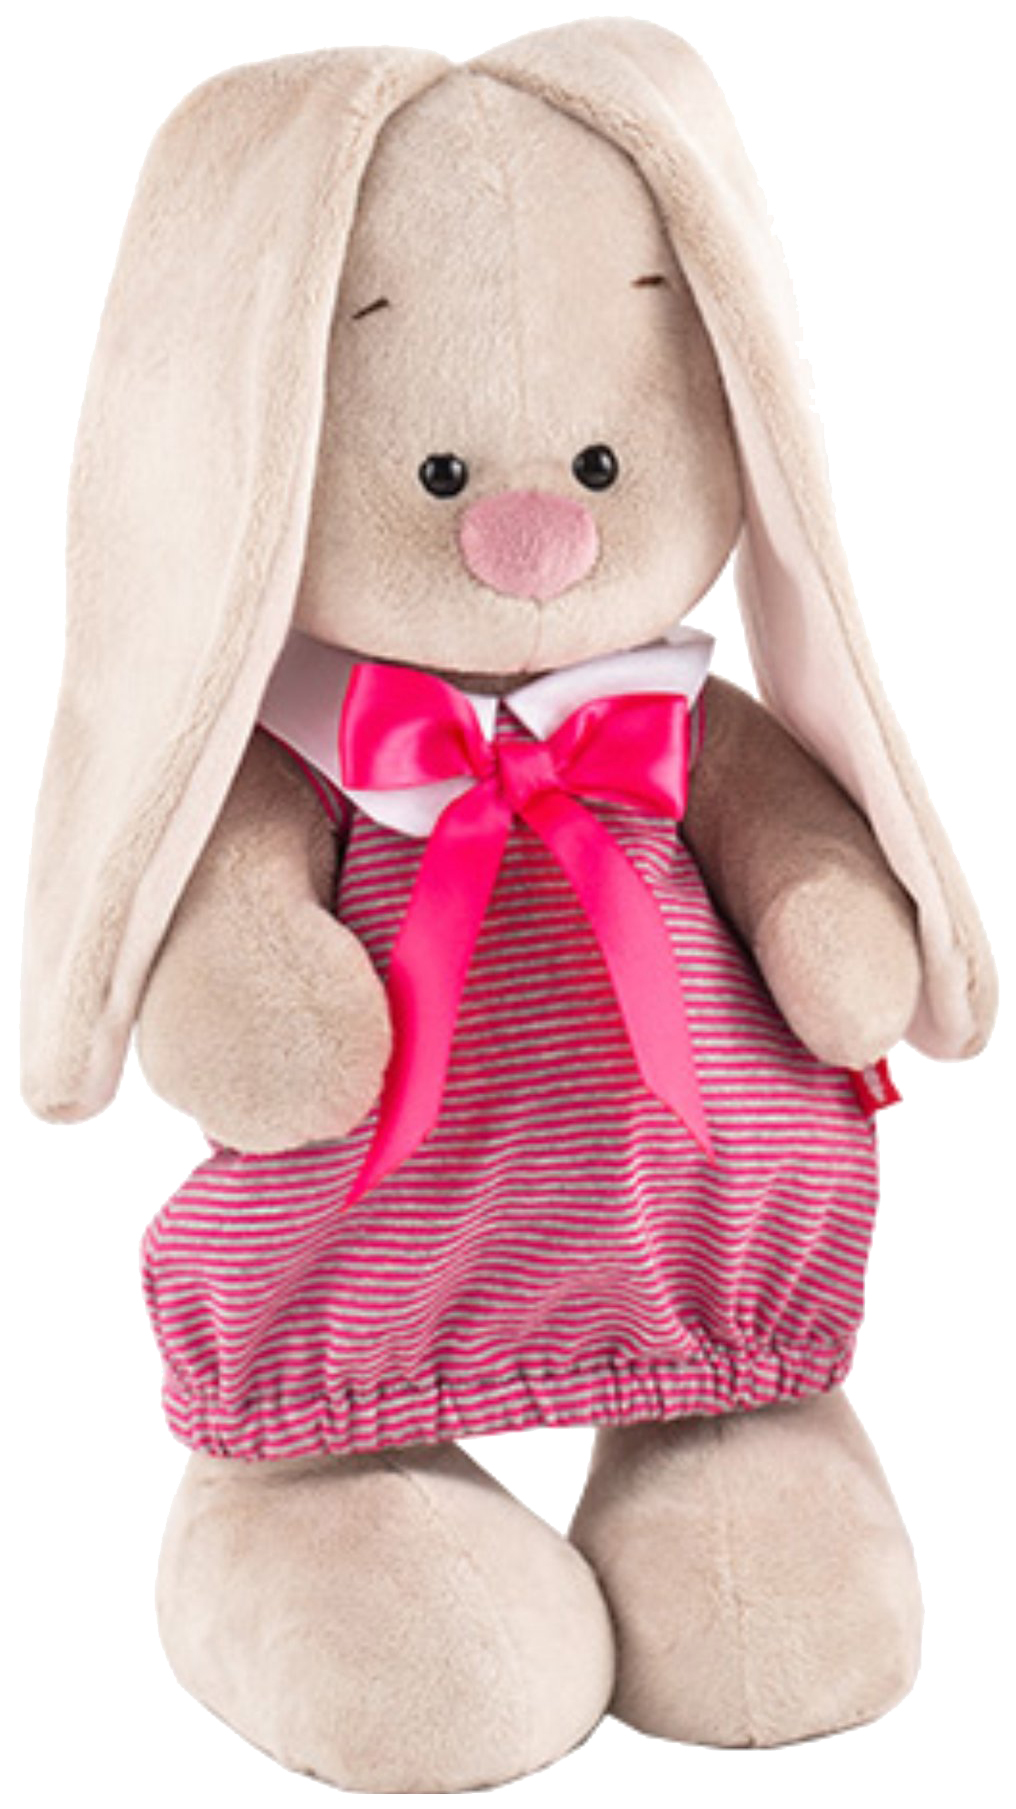 Мягкая игрушка BUDI BASA StS-257 Зайка Ми в платье в розовую полоску (малая) мягкая игрушка budi basa зайка ми в нарядном платье 25 см sts 320